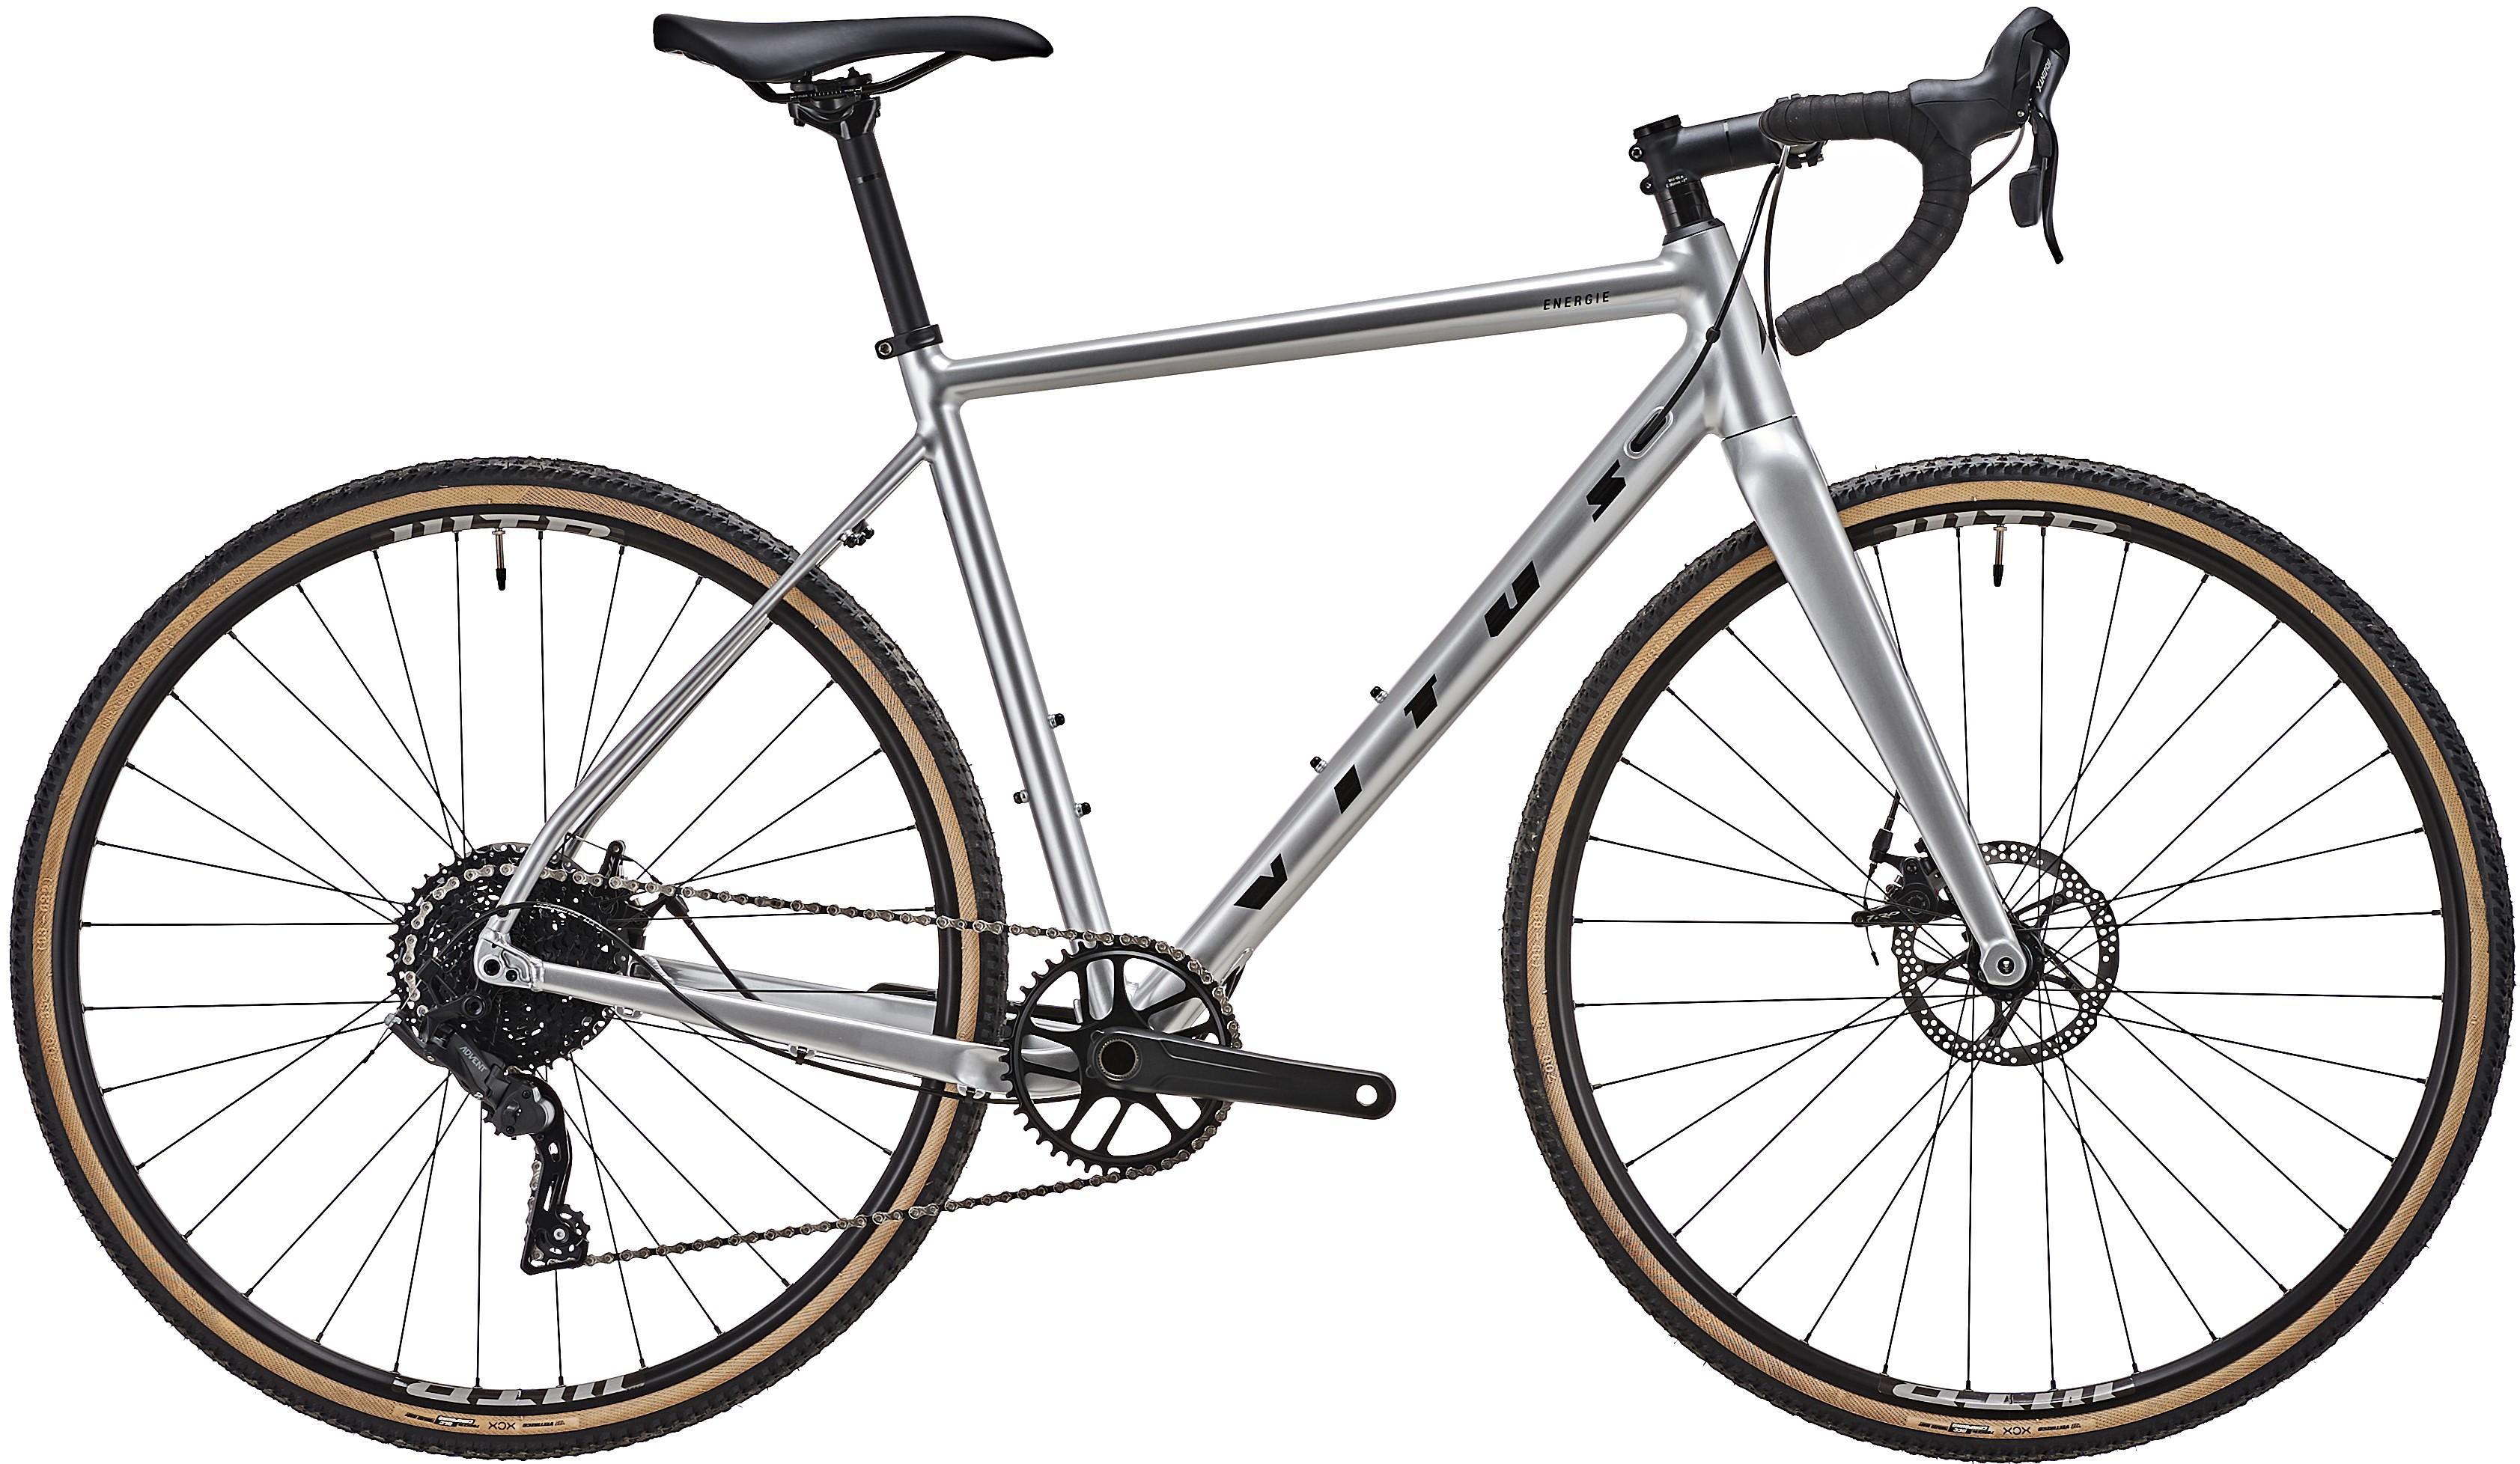 Vitus Energie Vr Cyclocross Bike - Silver